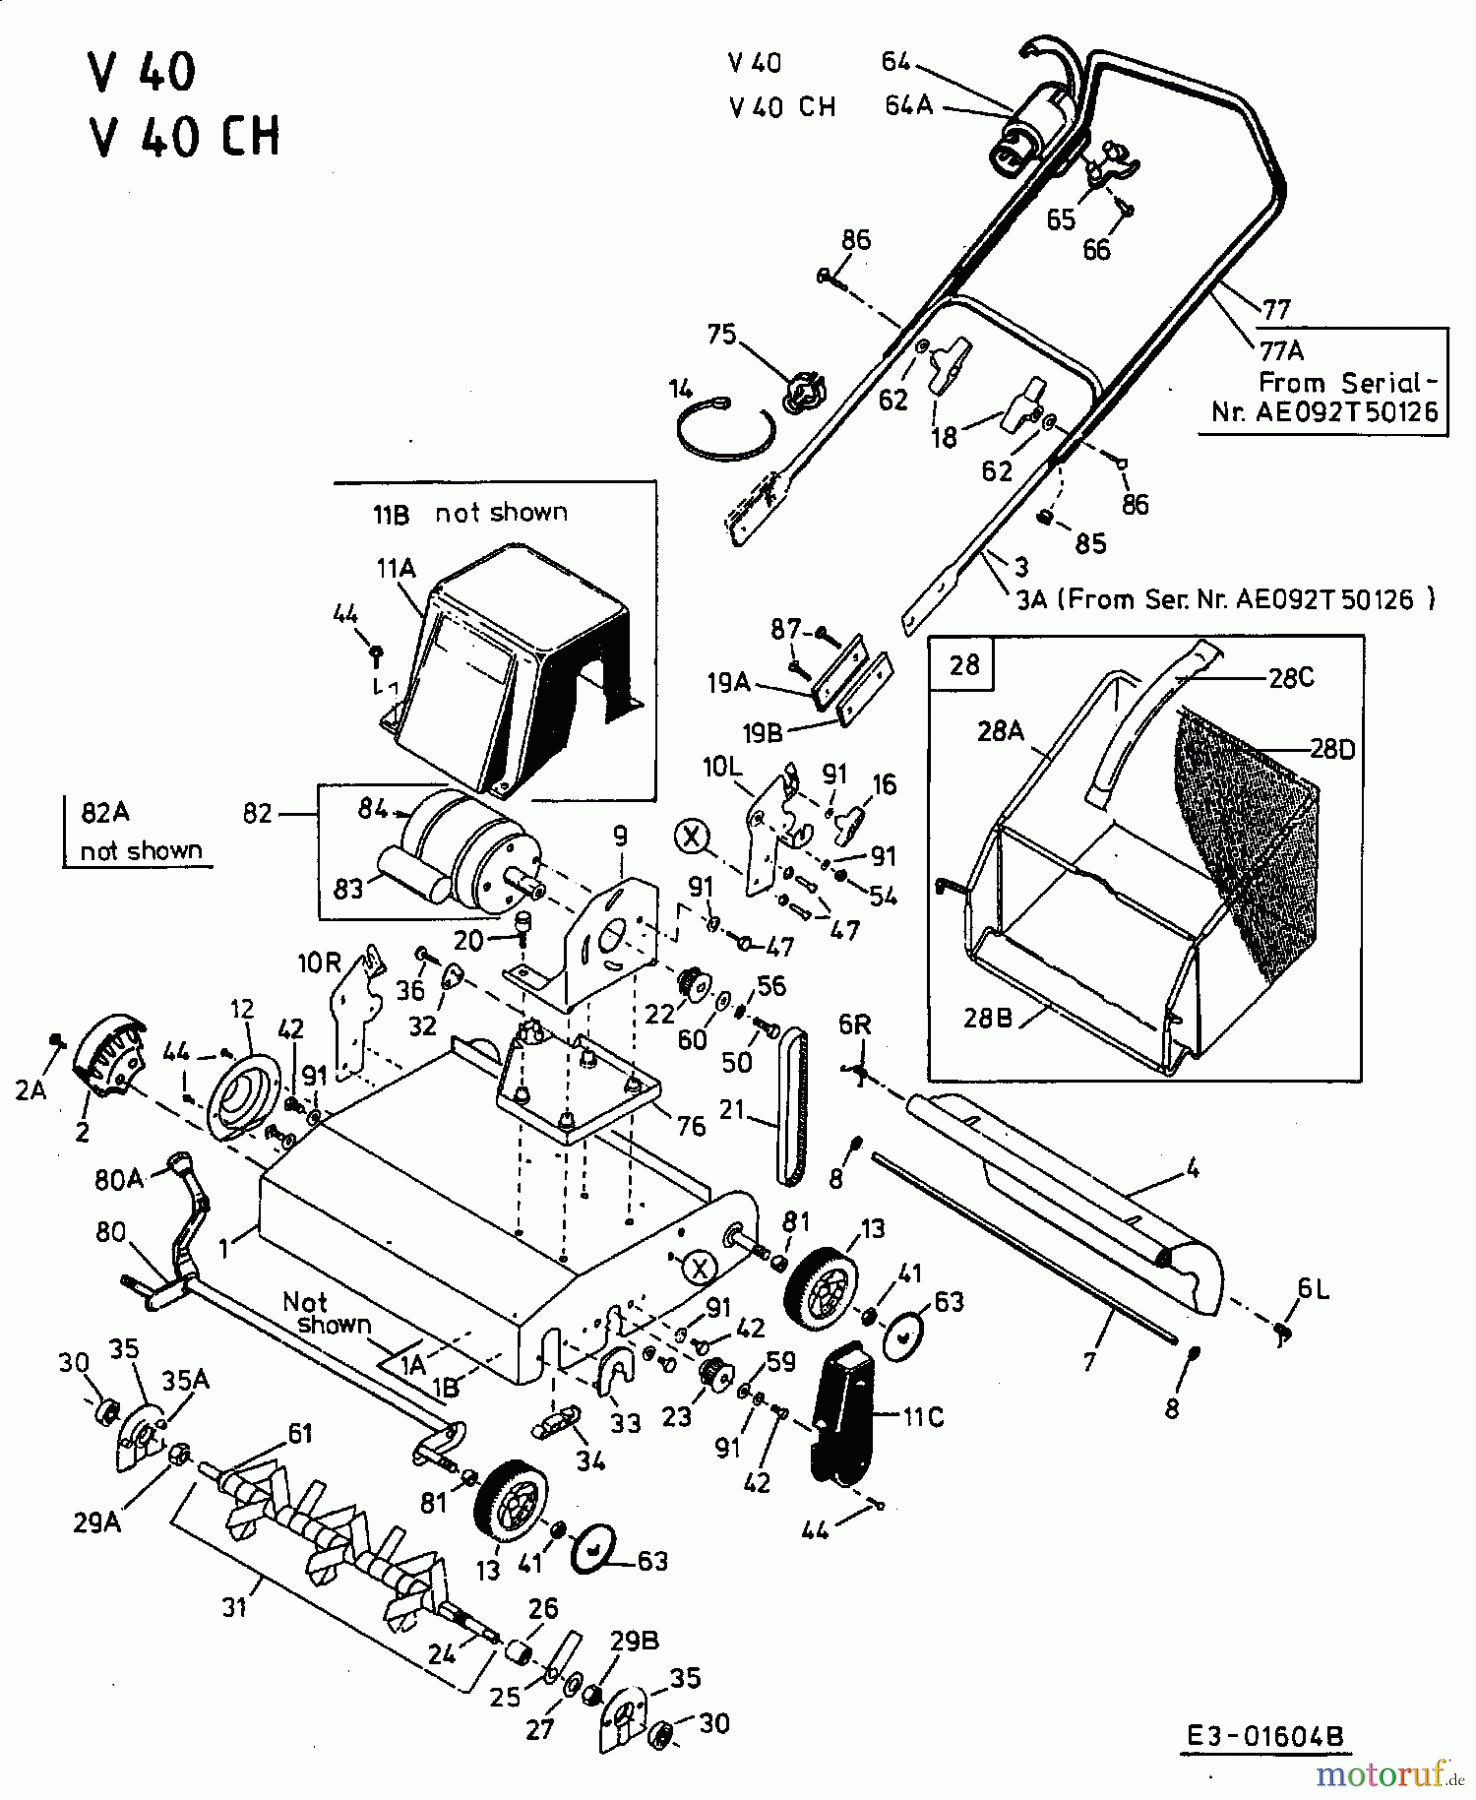  MTD Elektrovertikutierer V 40 16BEM0G-678  (2002) Grundgerät